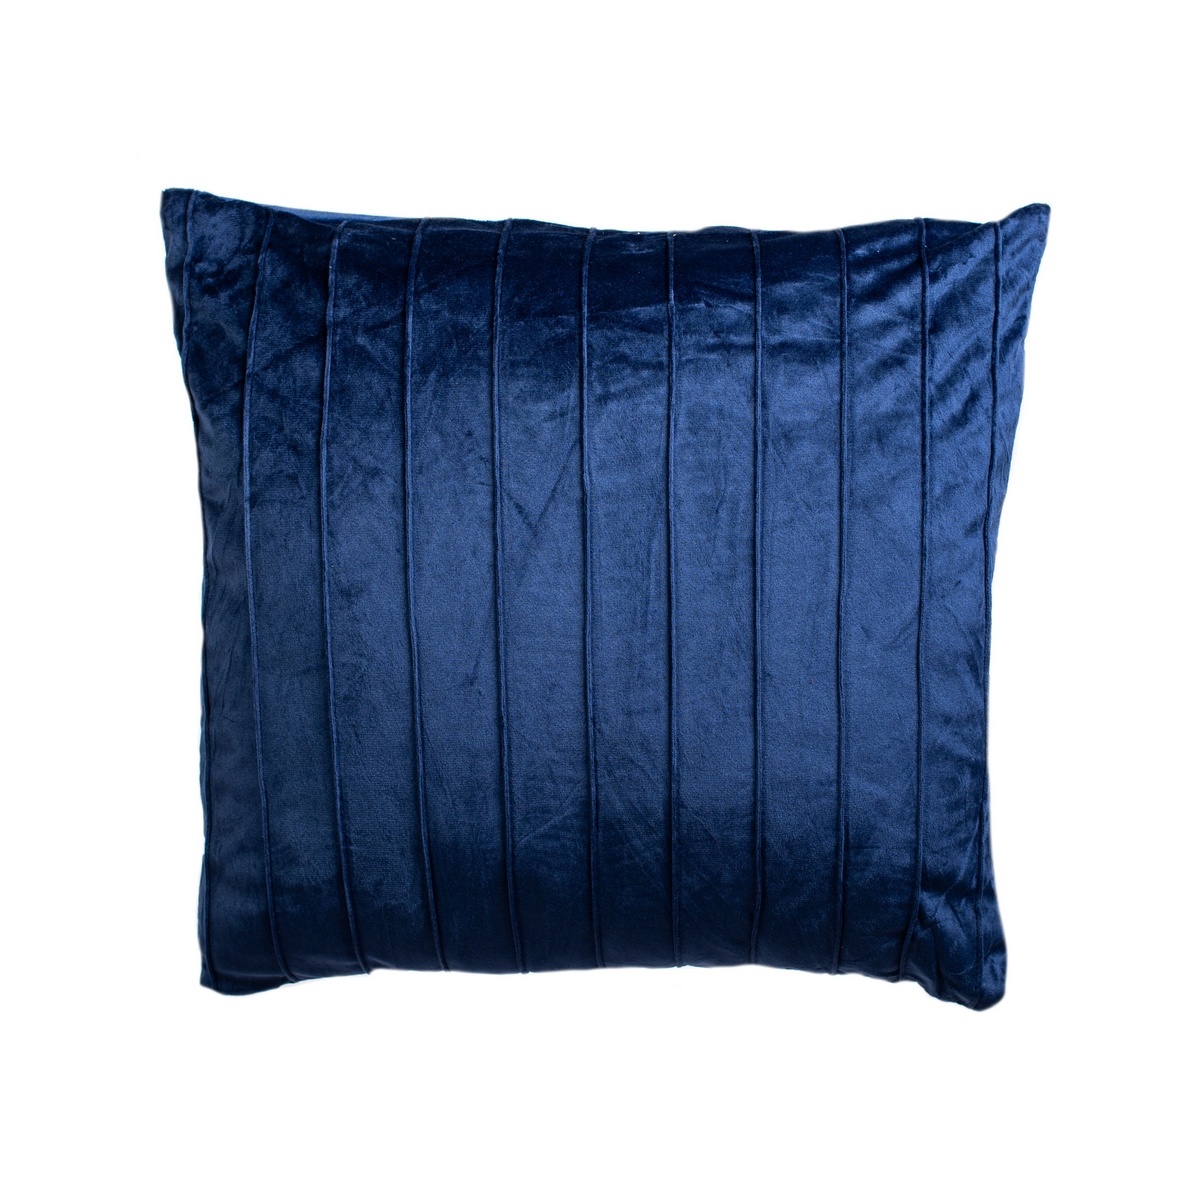 Povlak na polštářek Stripe tm. modrá, 40 x 40 cm